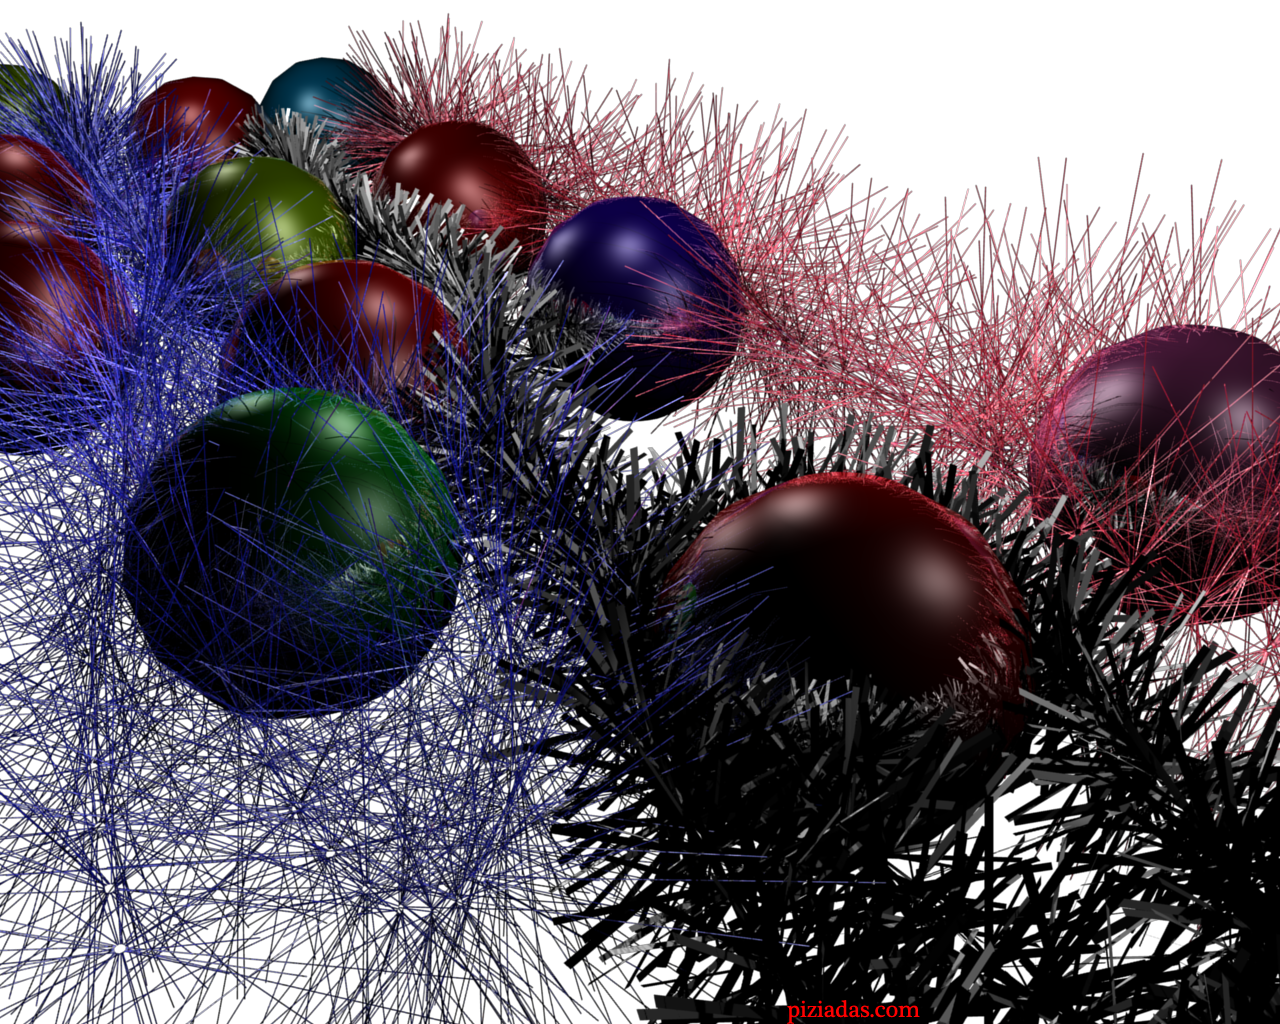 Fondos de escritorio: Navidad (II) [Imagen 1280×1024] | PIZiadas gráficas